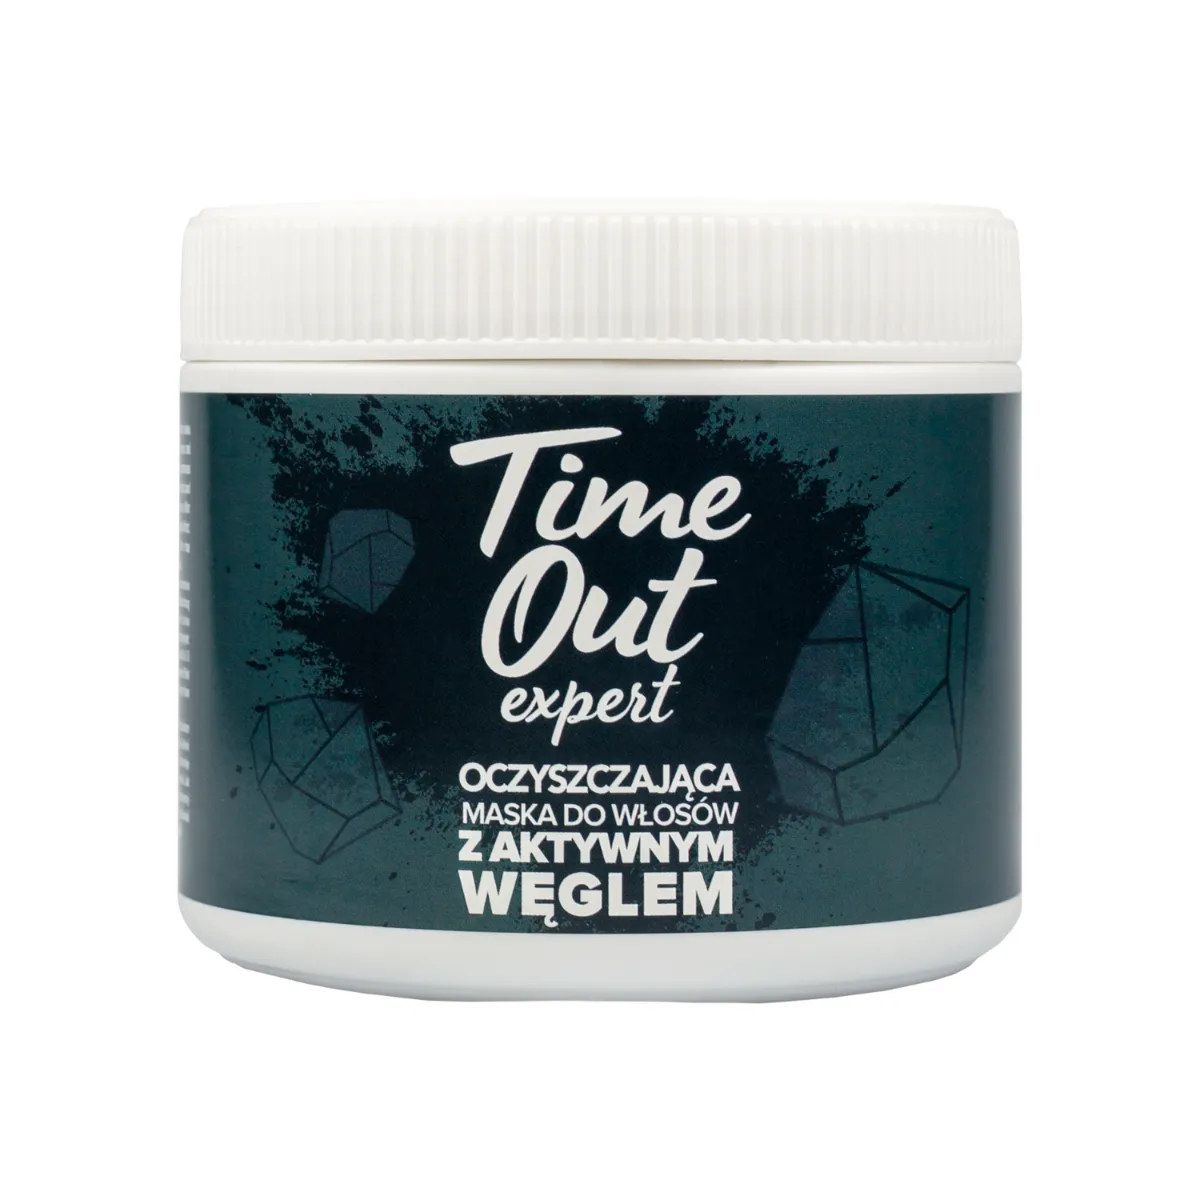 Time Out maska do włosów oczyszczająca z aktywnym węglem, 500 g